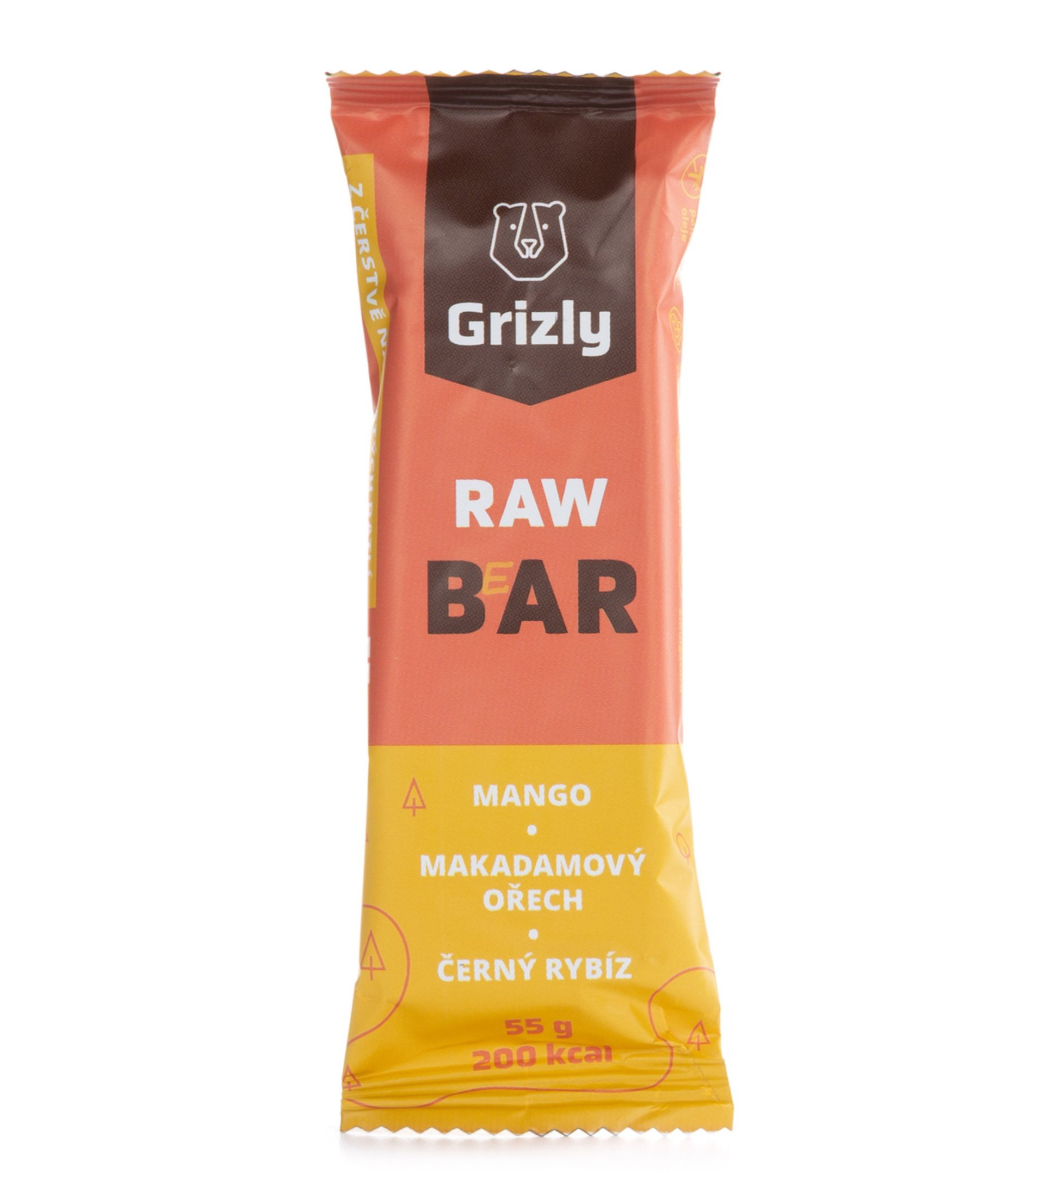 Grizly Raw bar mango